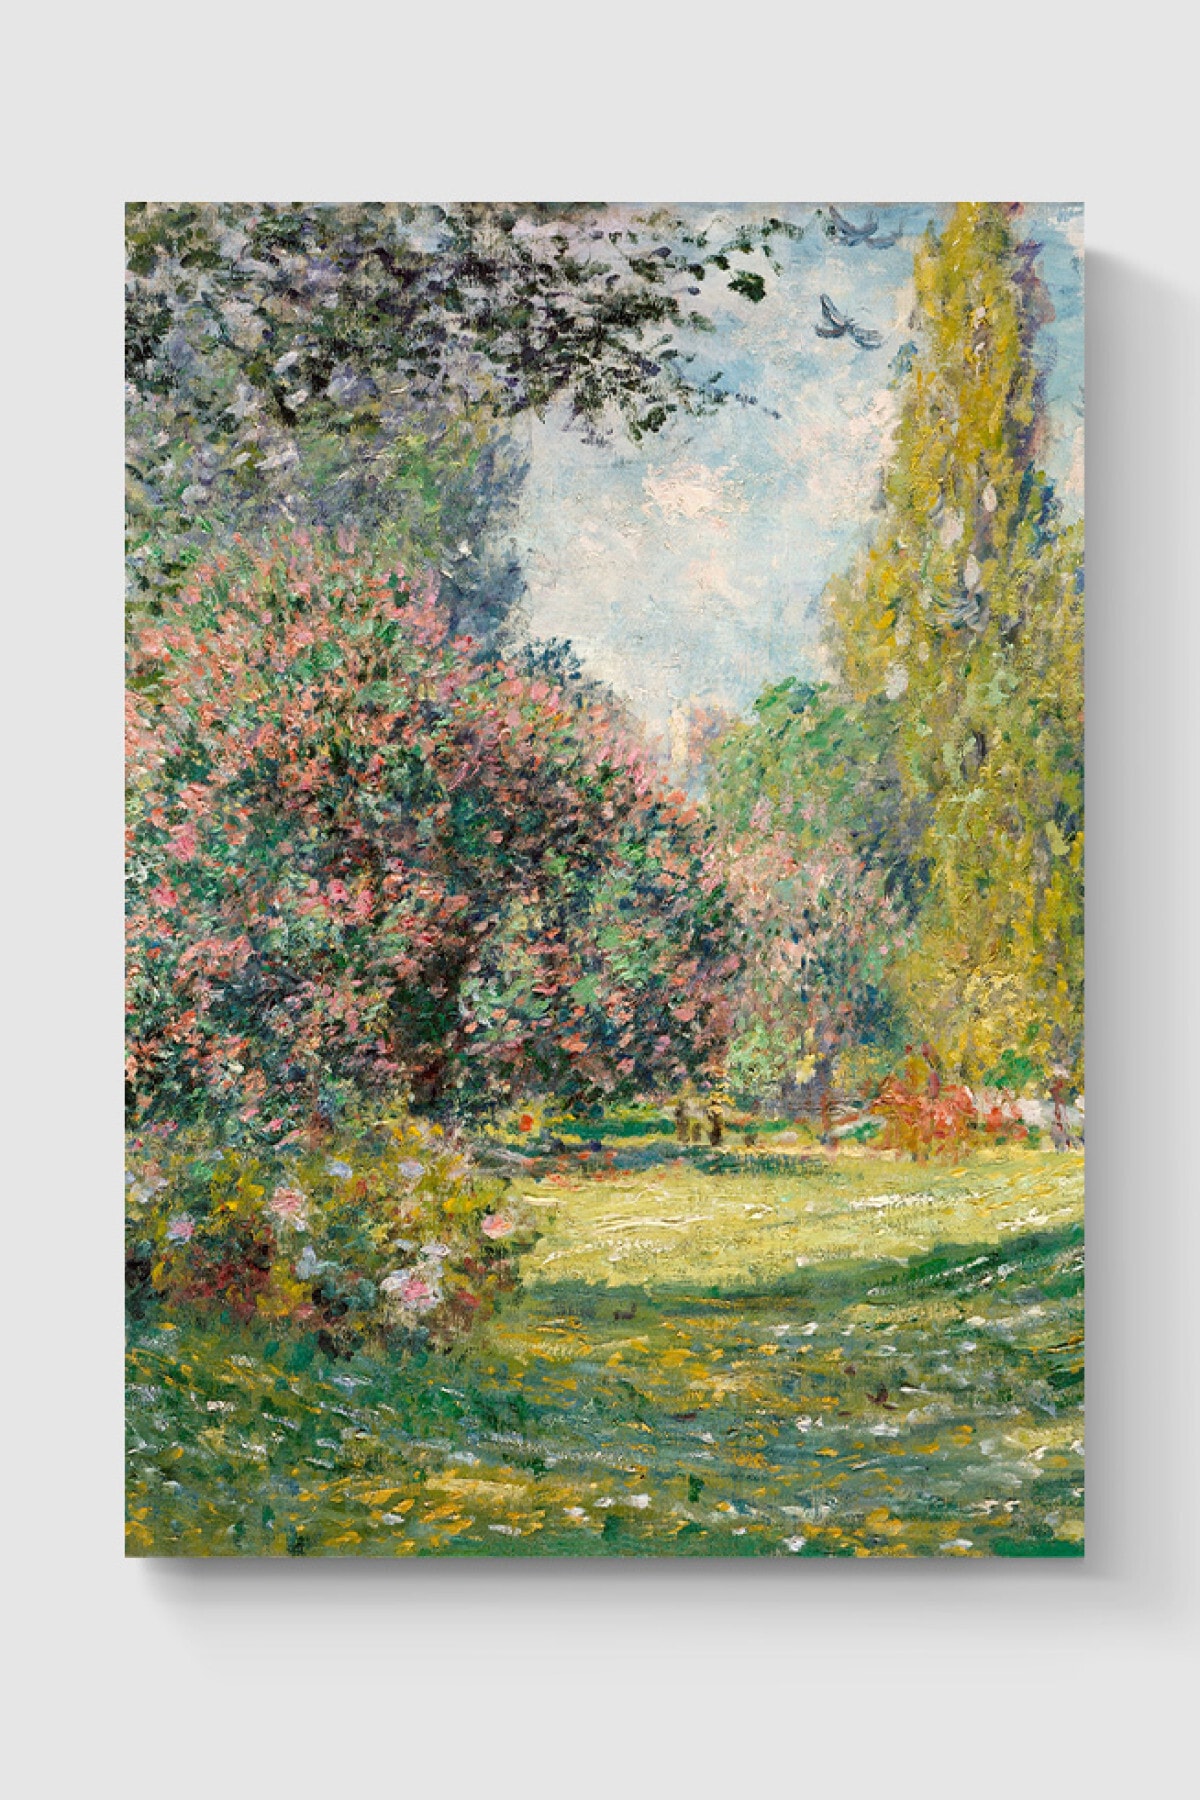 DuoArt Claude Monet Tablo Sanatsal Ünlü Ressam Poster - Yüksek Çözünürlük Hd Poster